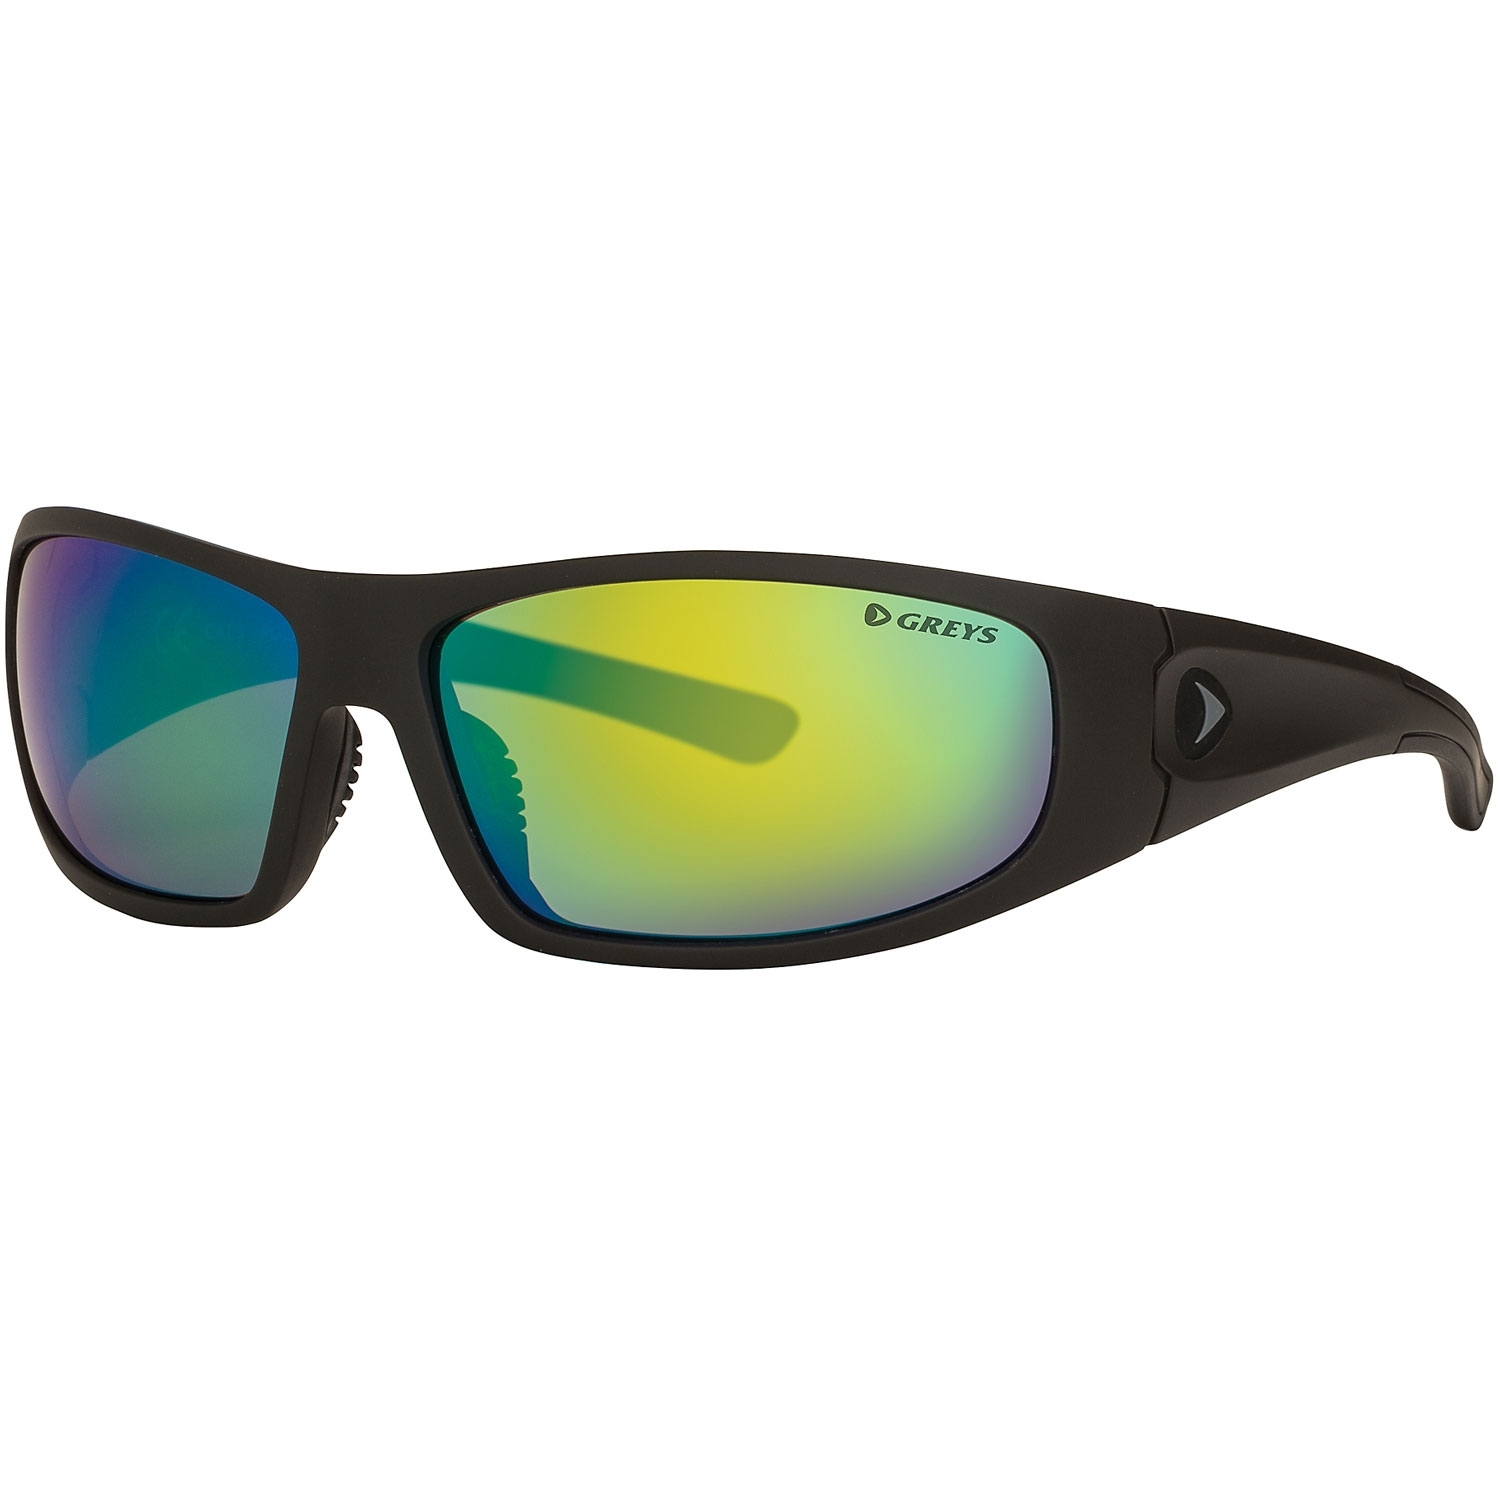 Greys G1 Sunglasses (Matt Carbon/Blue Mirror)